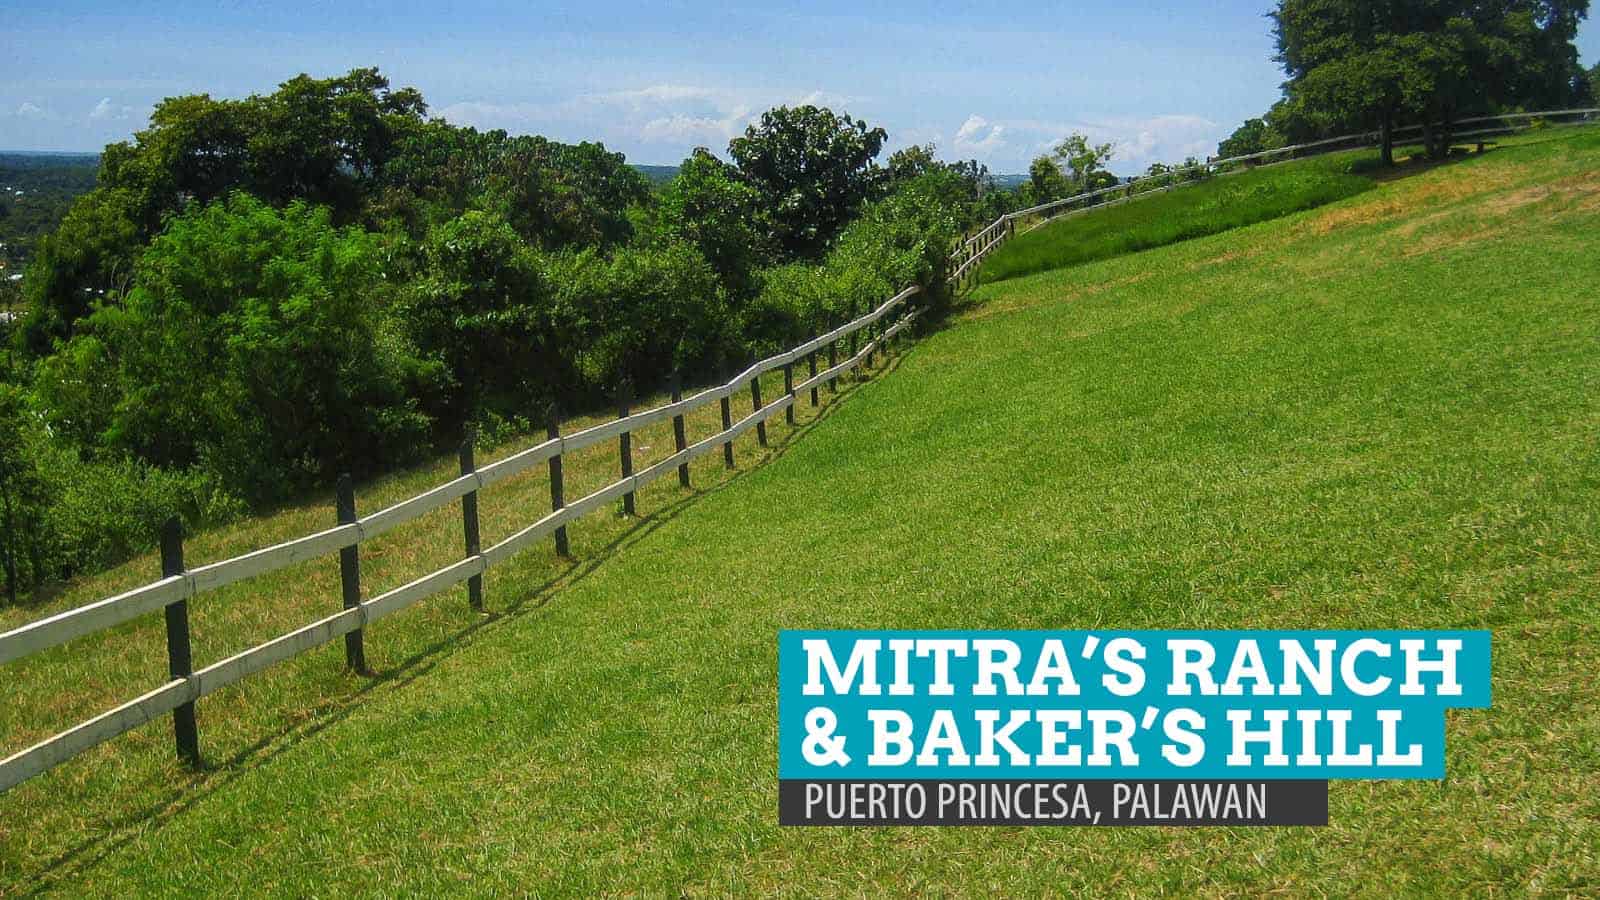 Mitra’s Ranch and Baker’s Hill: Puerto Princesa, Palawan